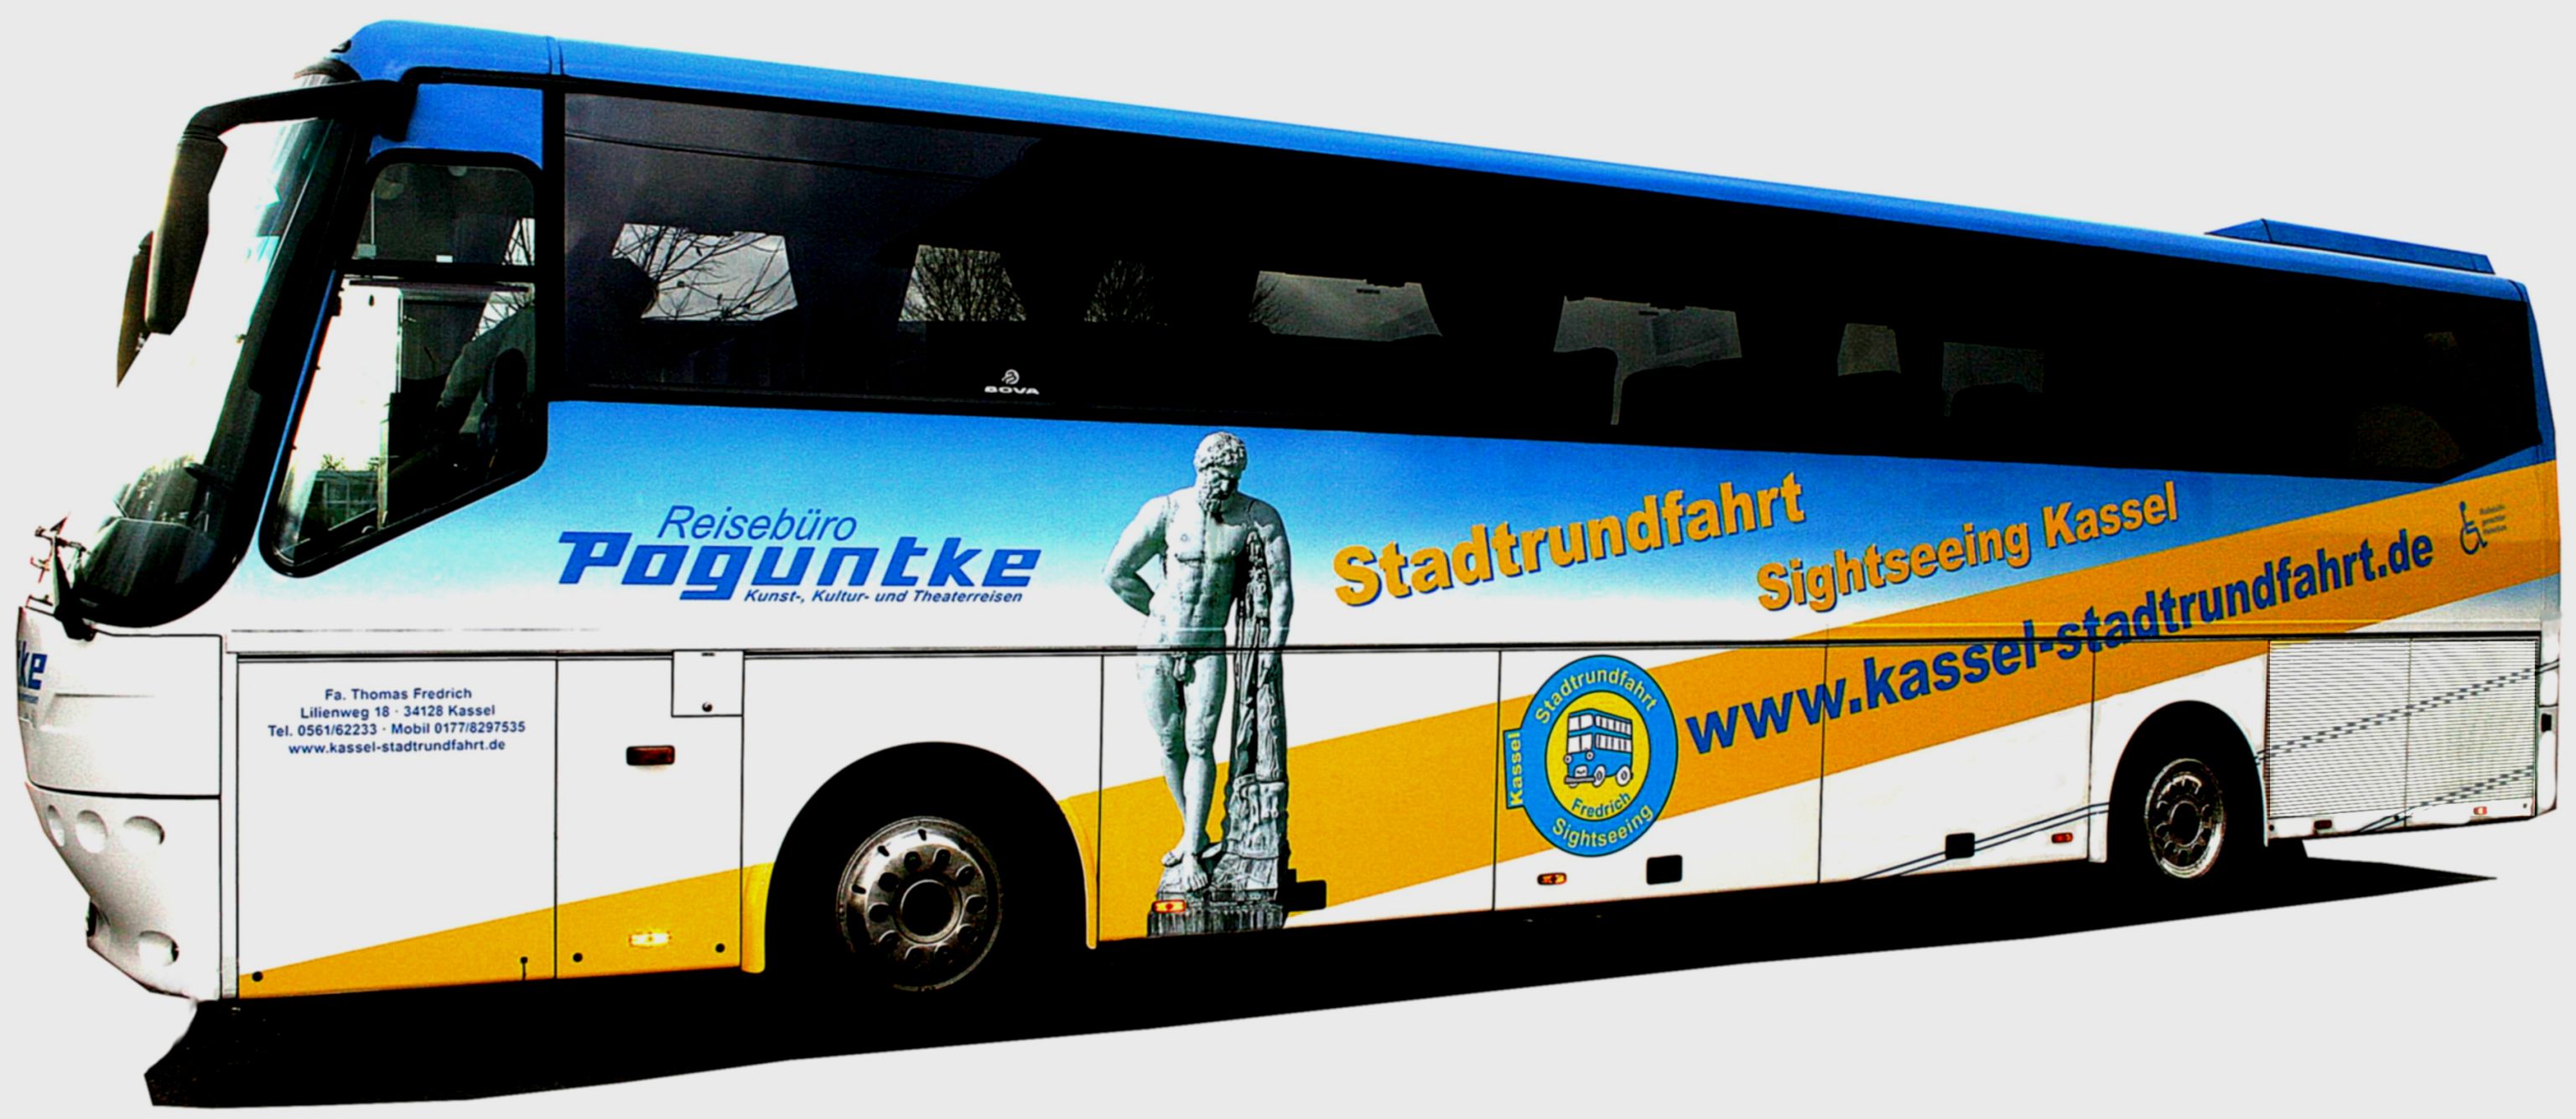 Kassel Stadtrundfahrt und Busreisen